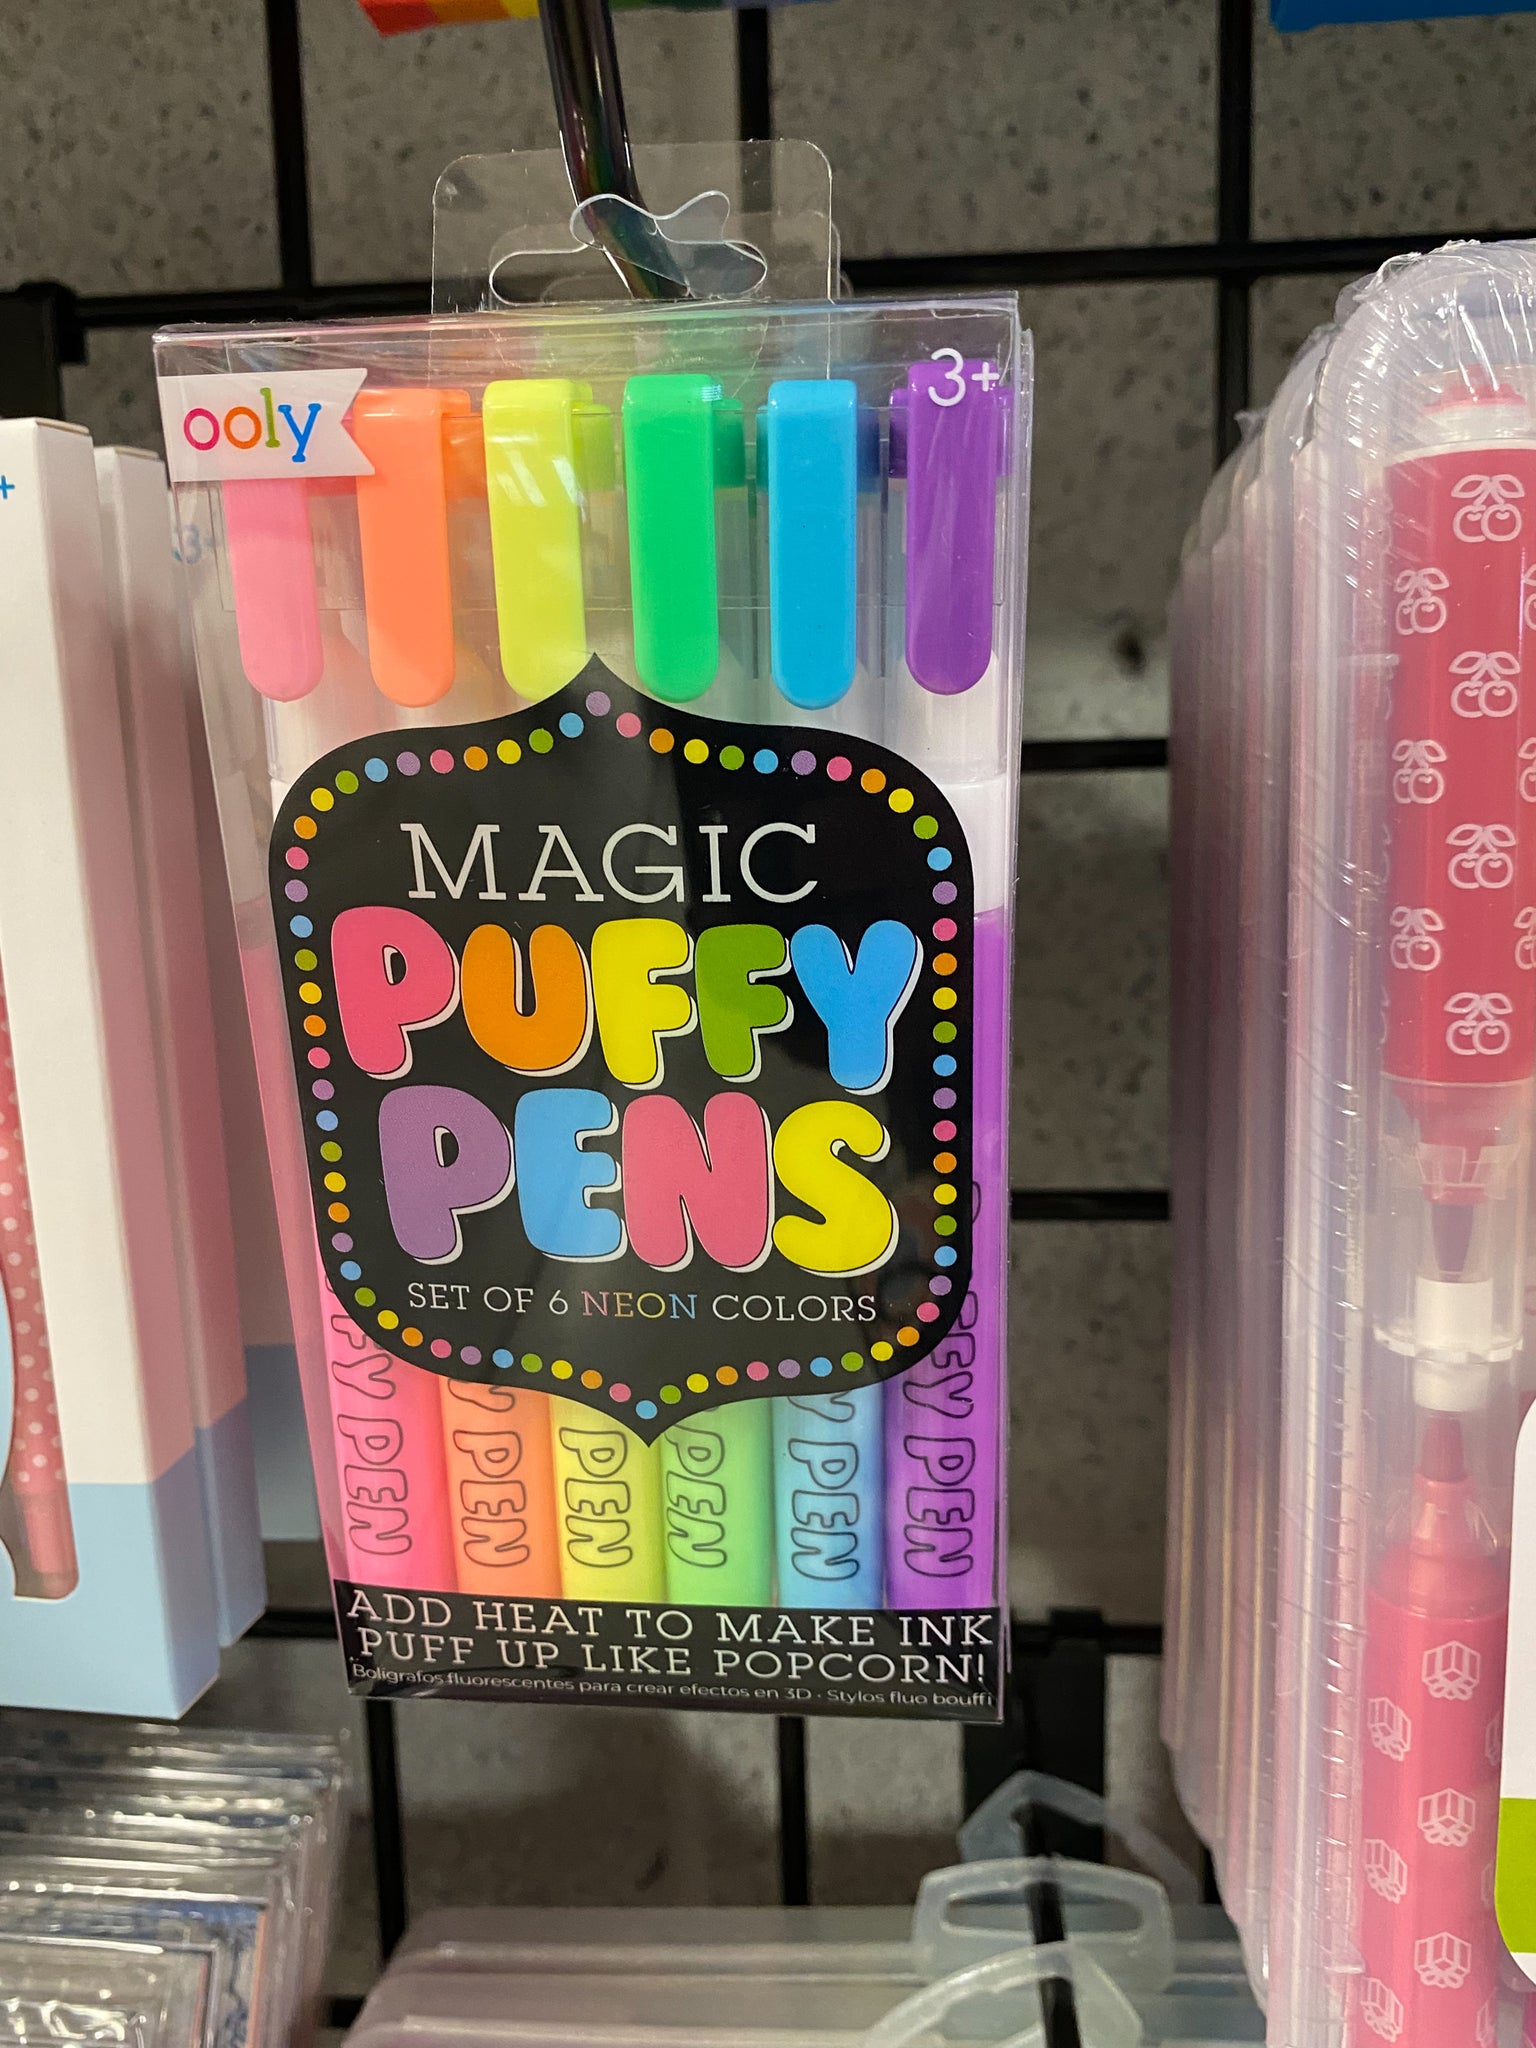 Diy Bubble Popcorn Drawing Pens Puffy Pens Magic Puffy Pens - Temu